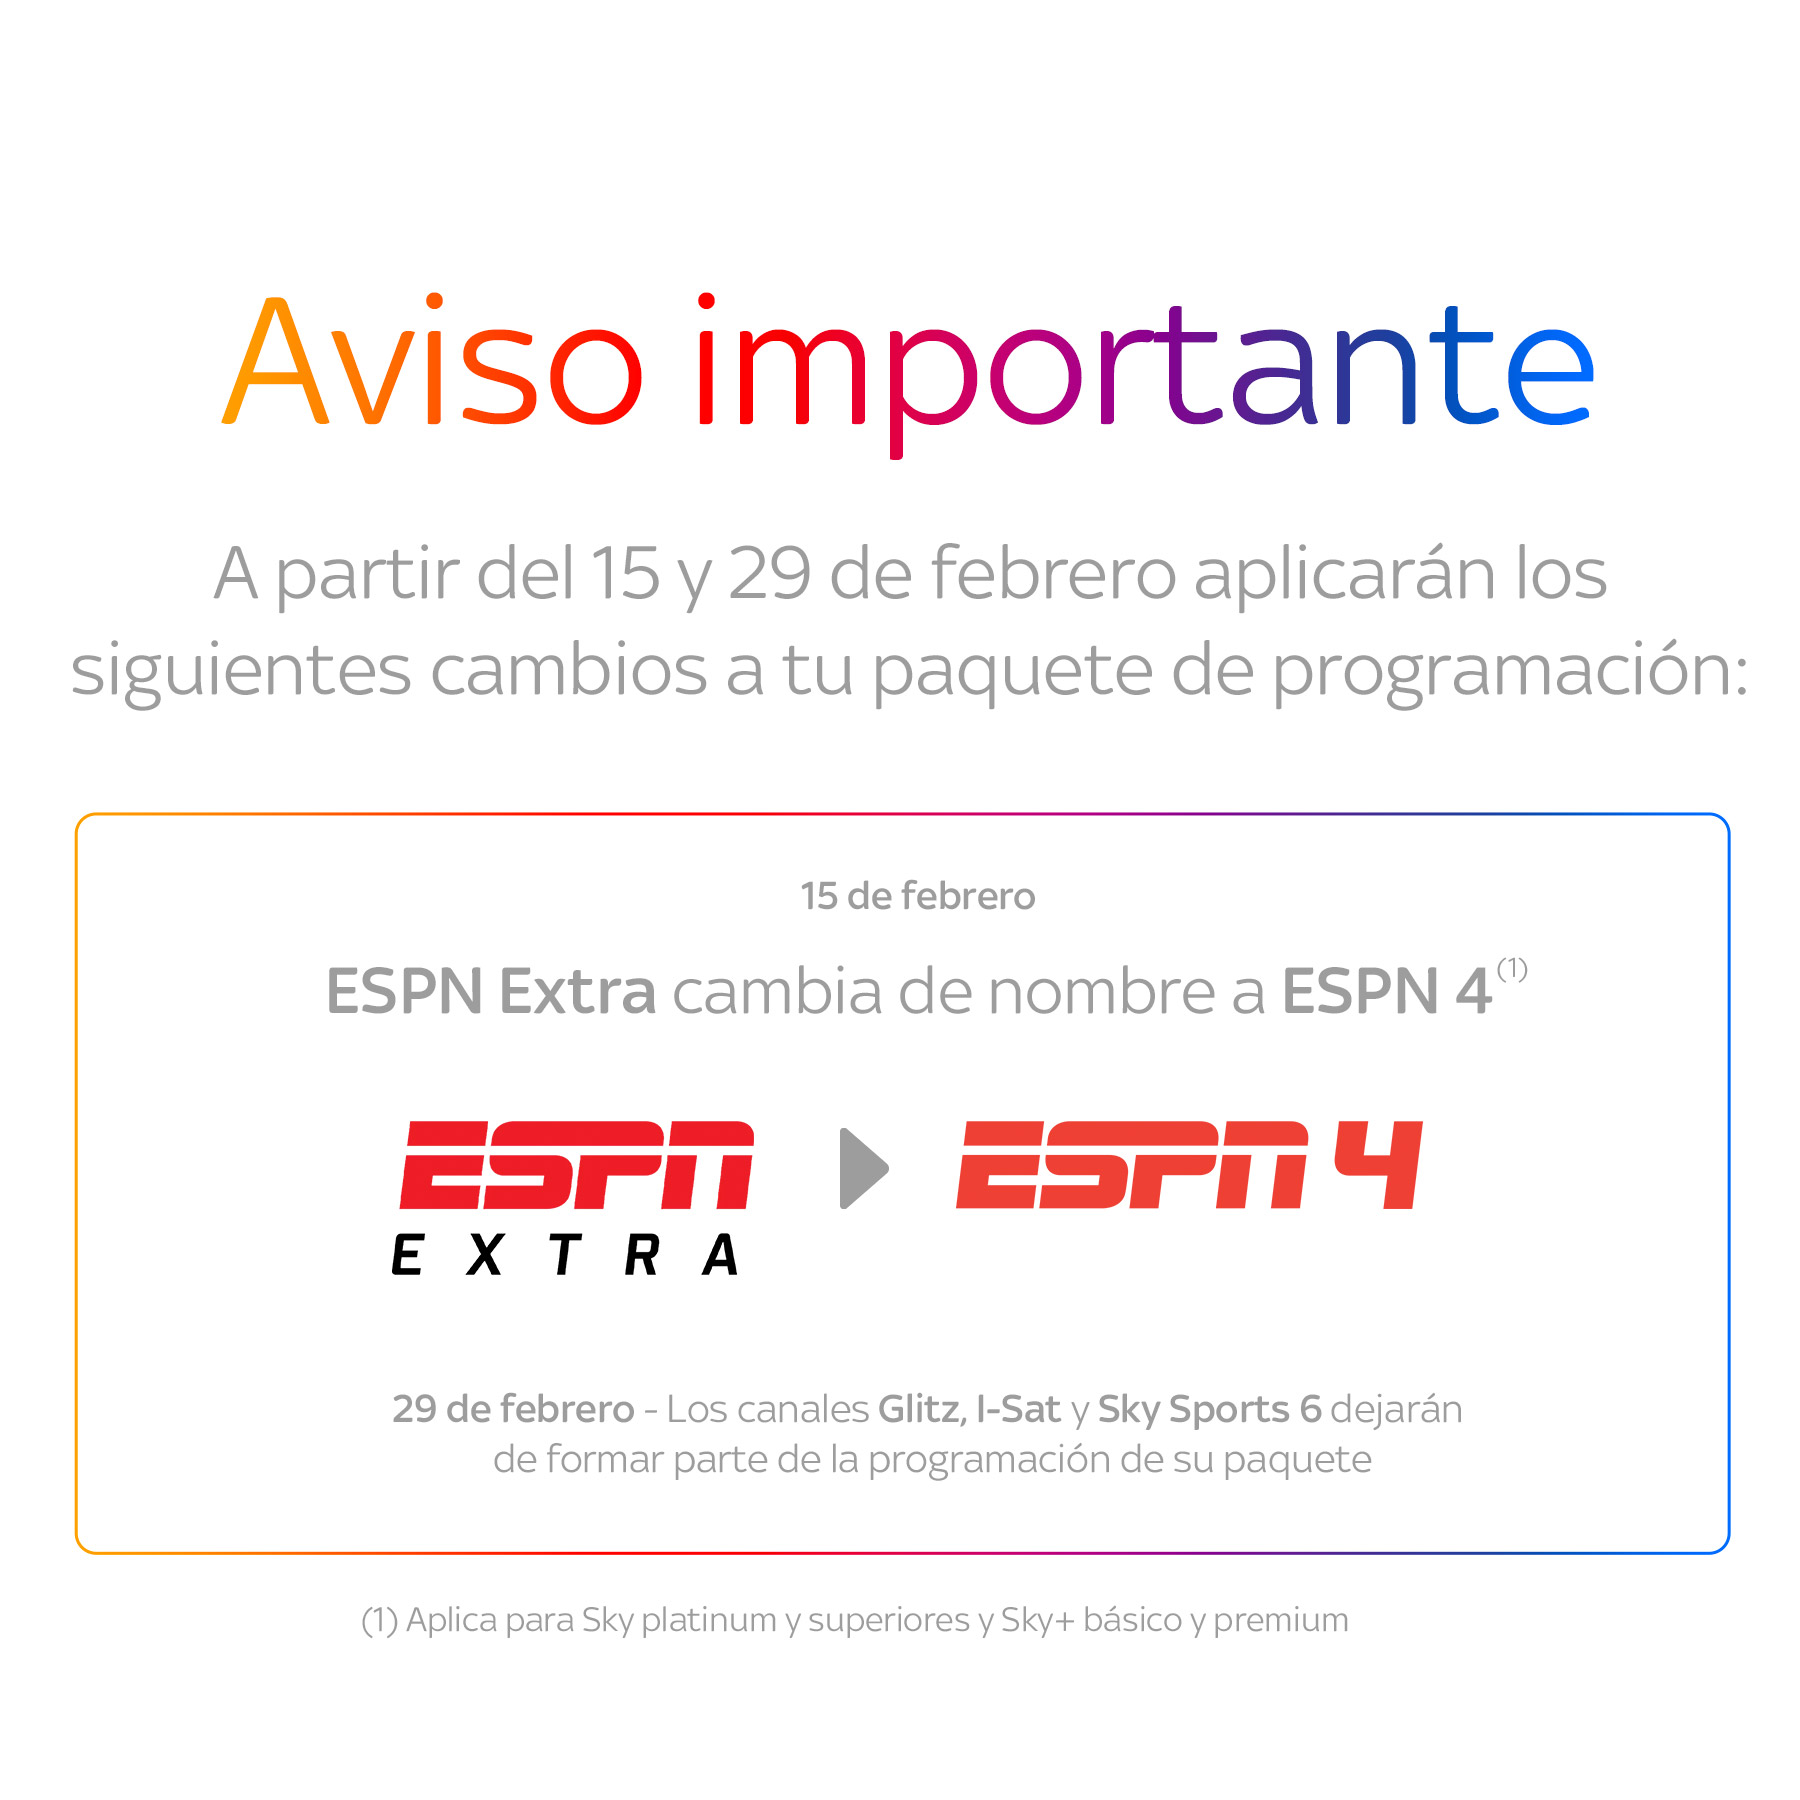 TV México HD para Android - Descargar